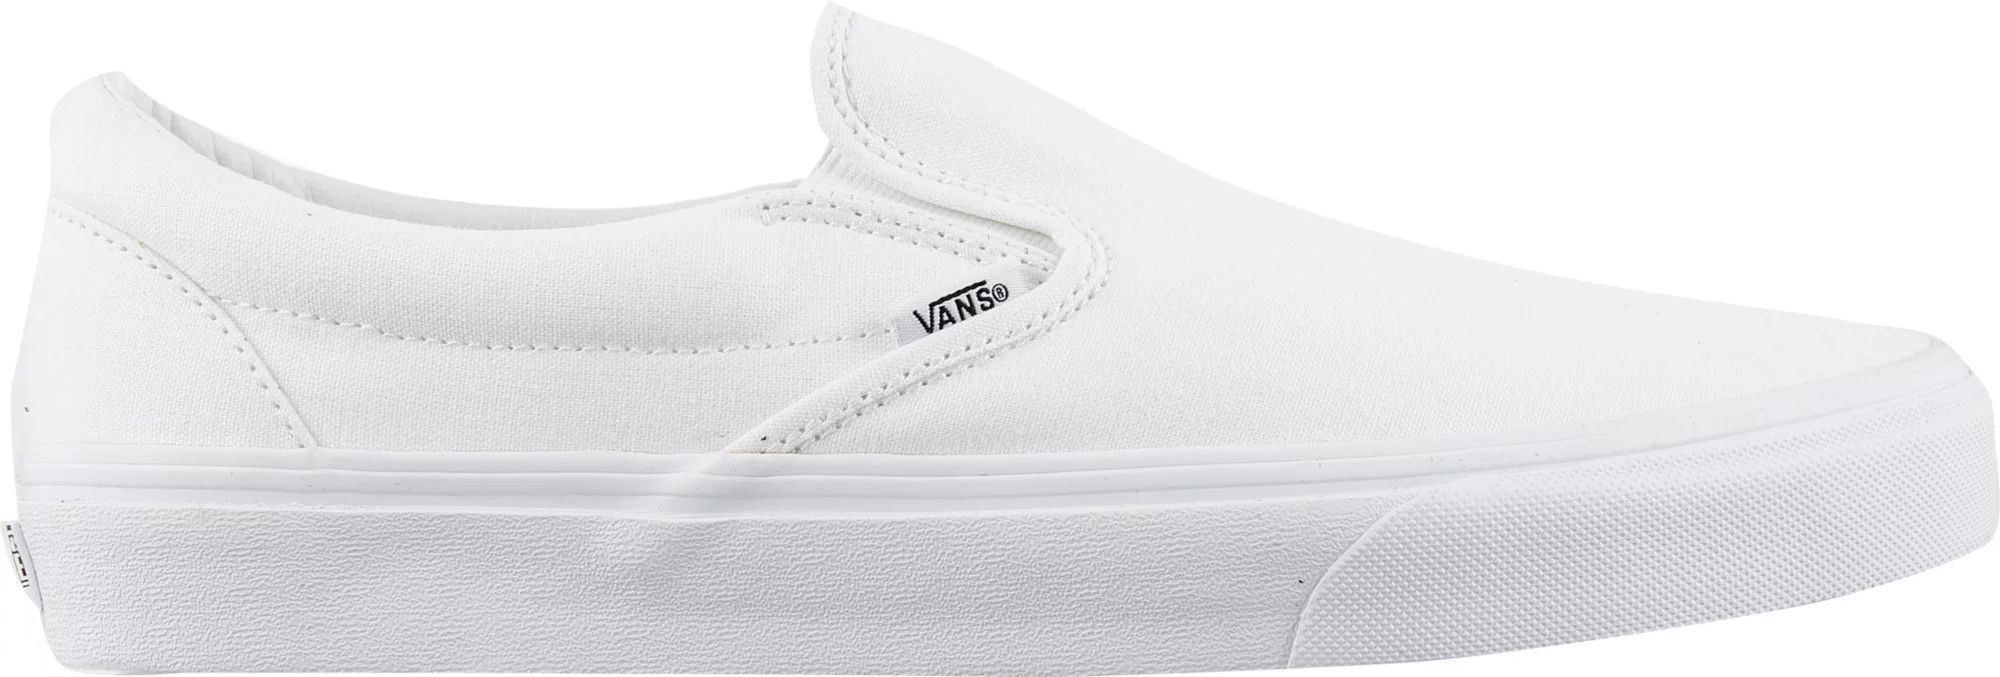 Vans Classic Slip-On Shoes, Men's, White/White | Dick's Sporting Goods